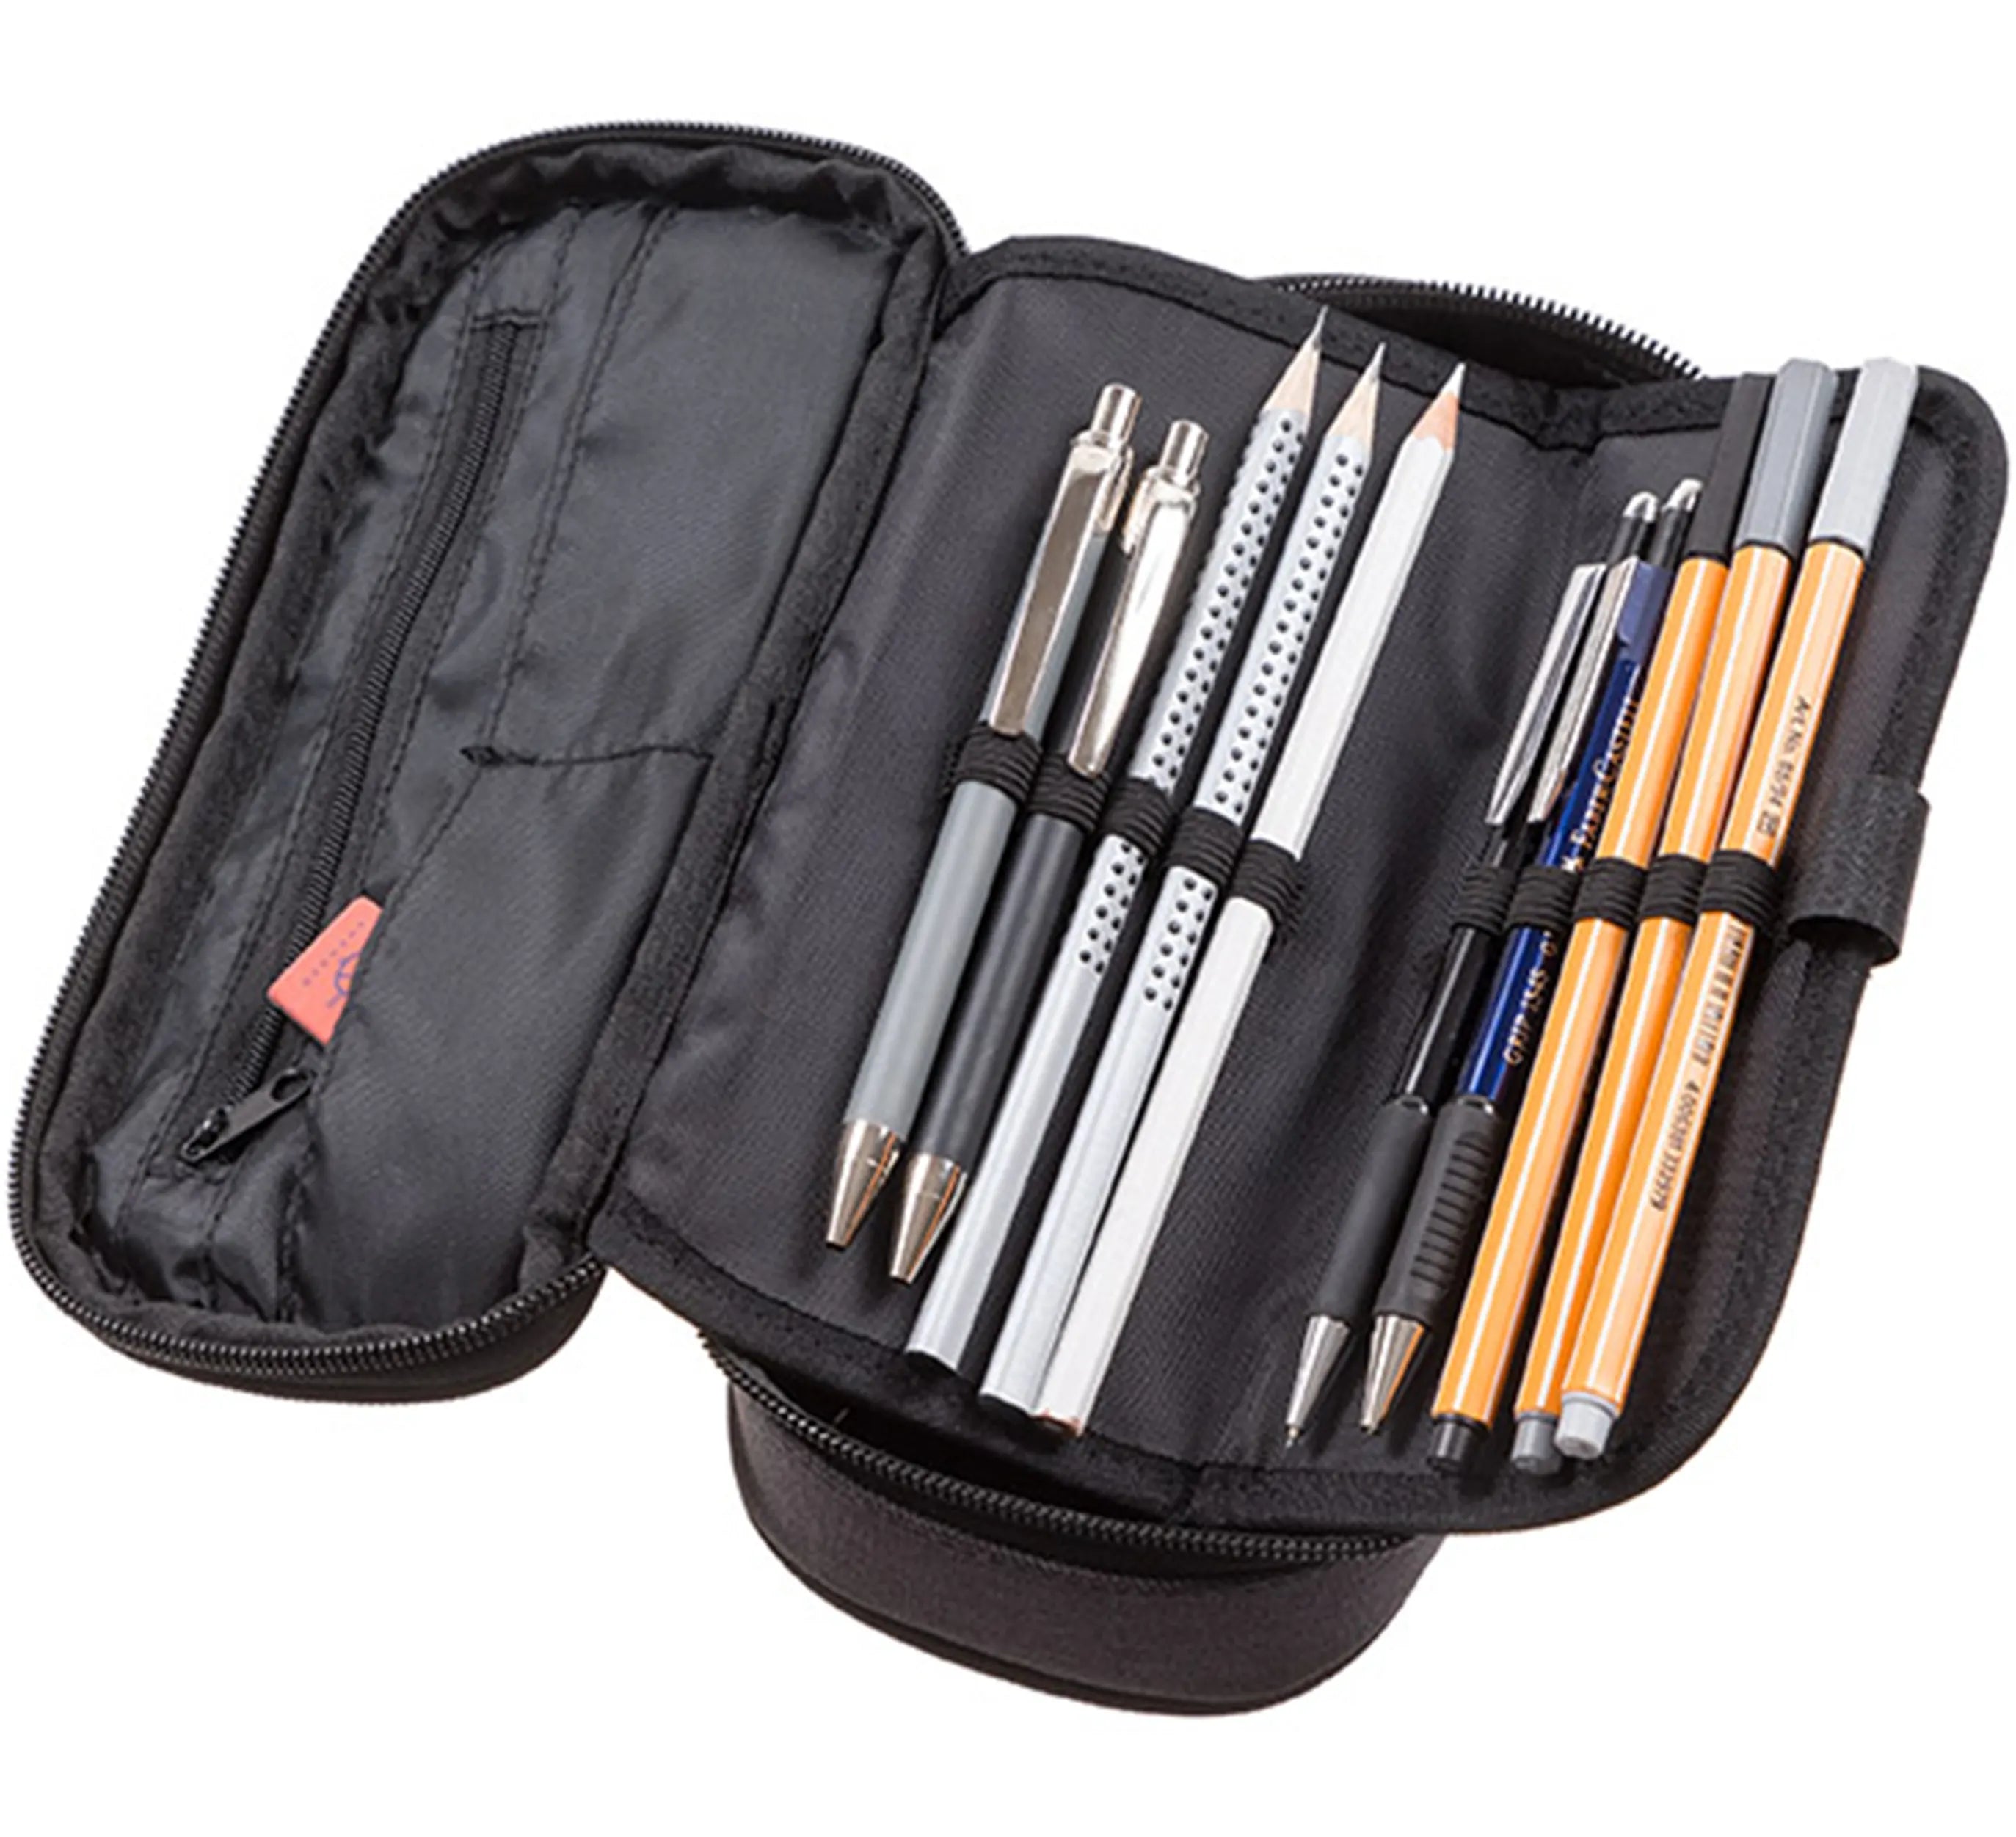 Walker Bags Pencil Box Concept 21 cm - Rust